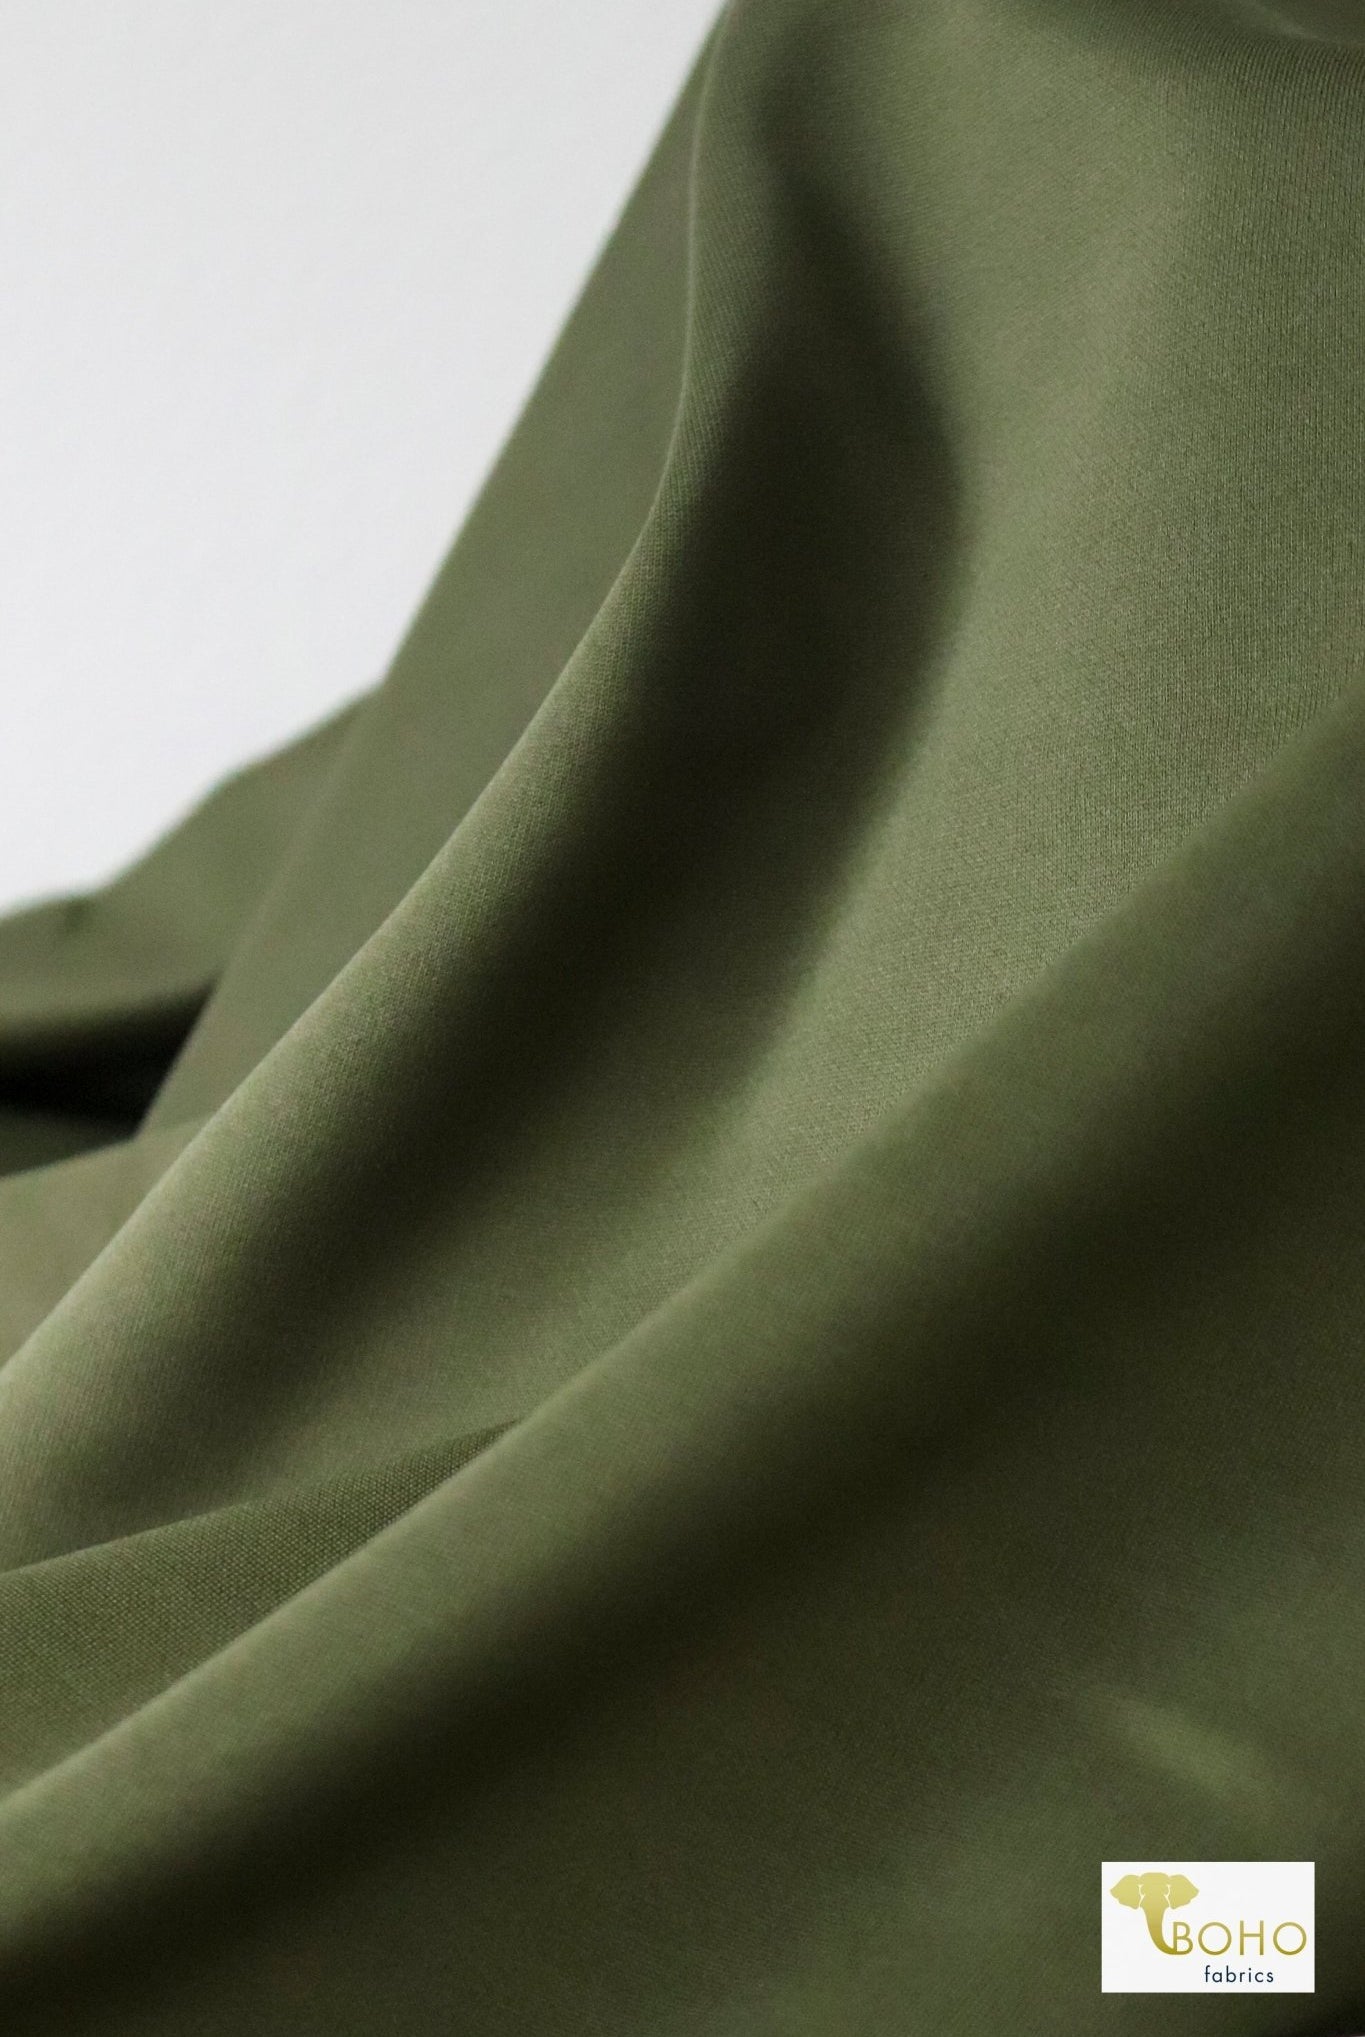 Olive Green, Scuba Knit - Boho Fabrics